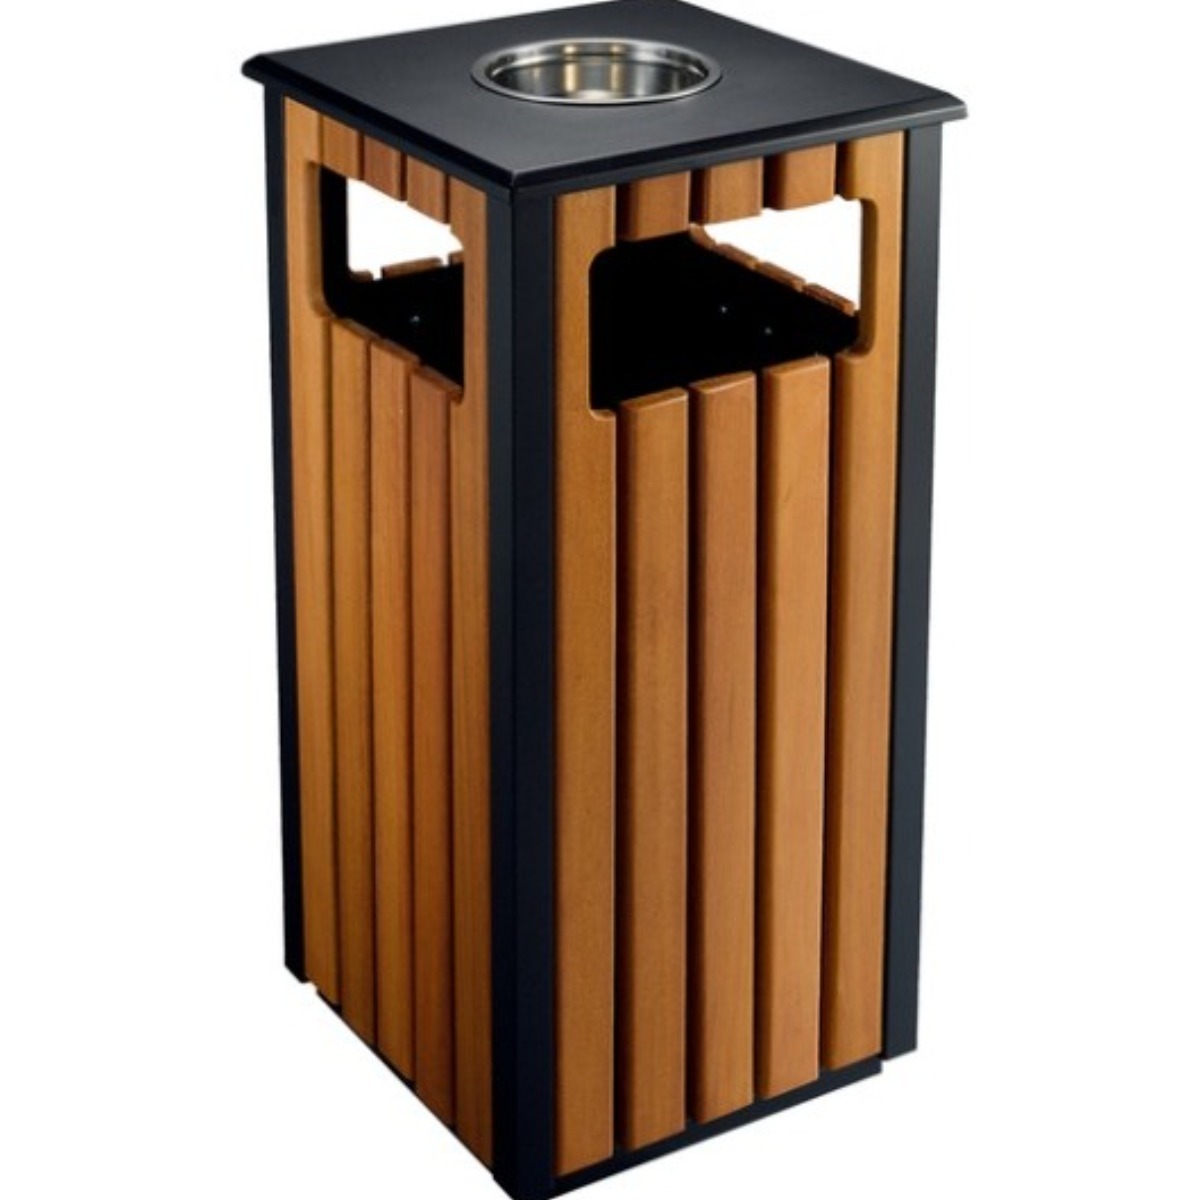 AB-520 Wood Open Space Trash Can adlı ürünün logosu